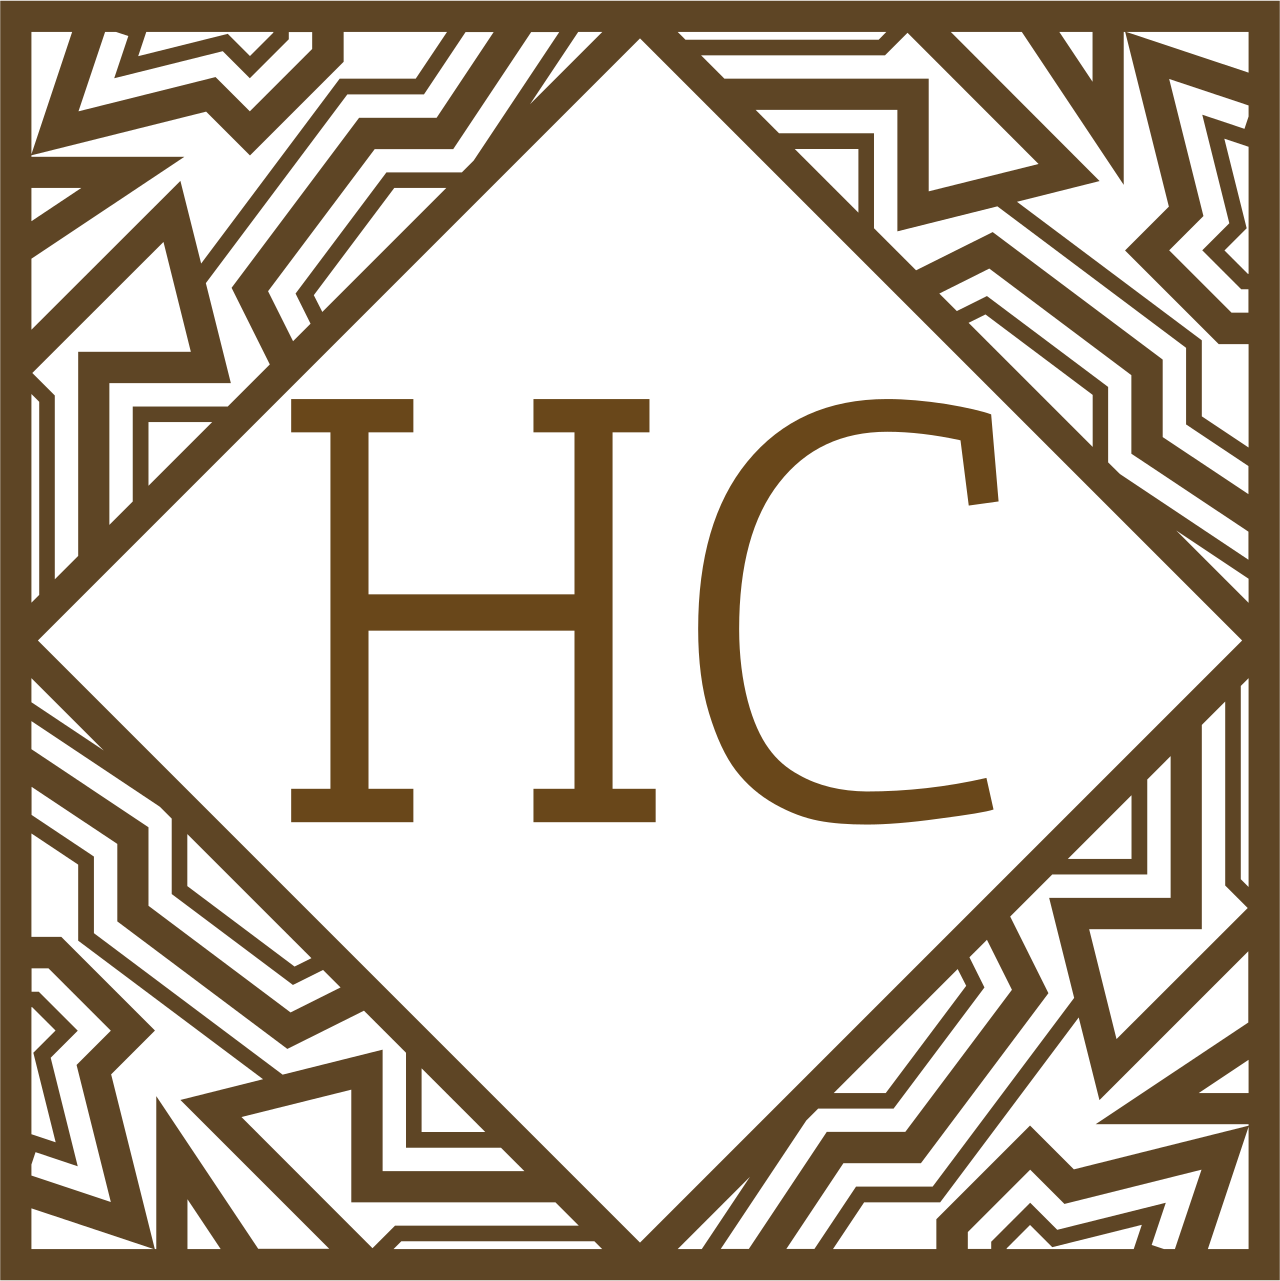 HC's web page